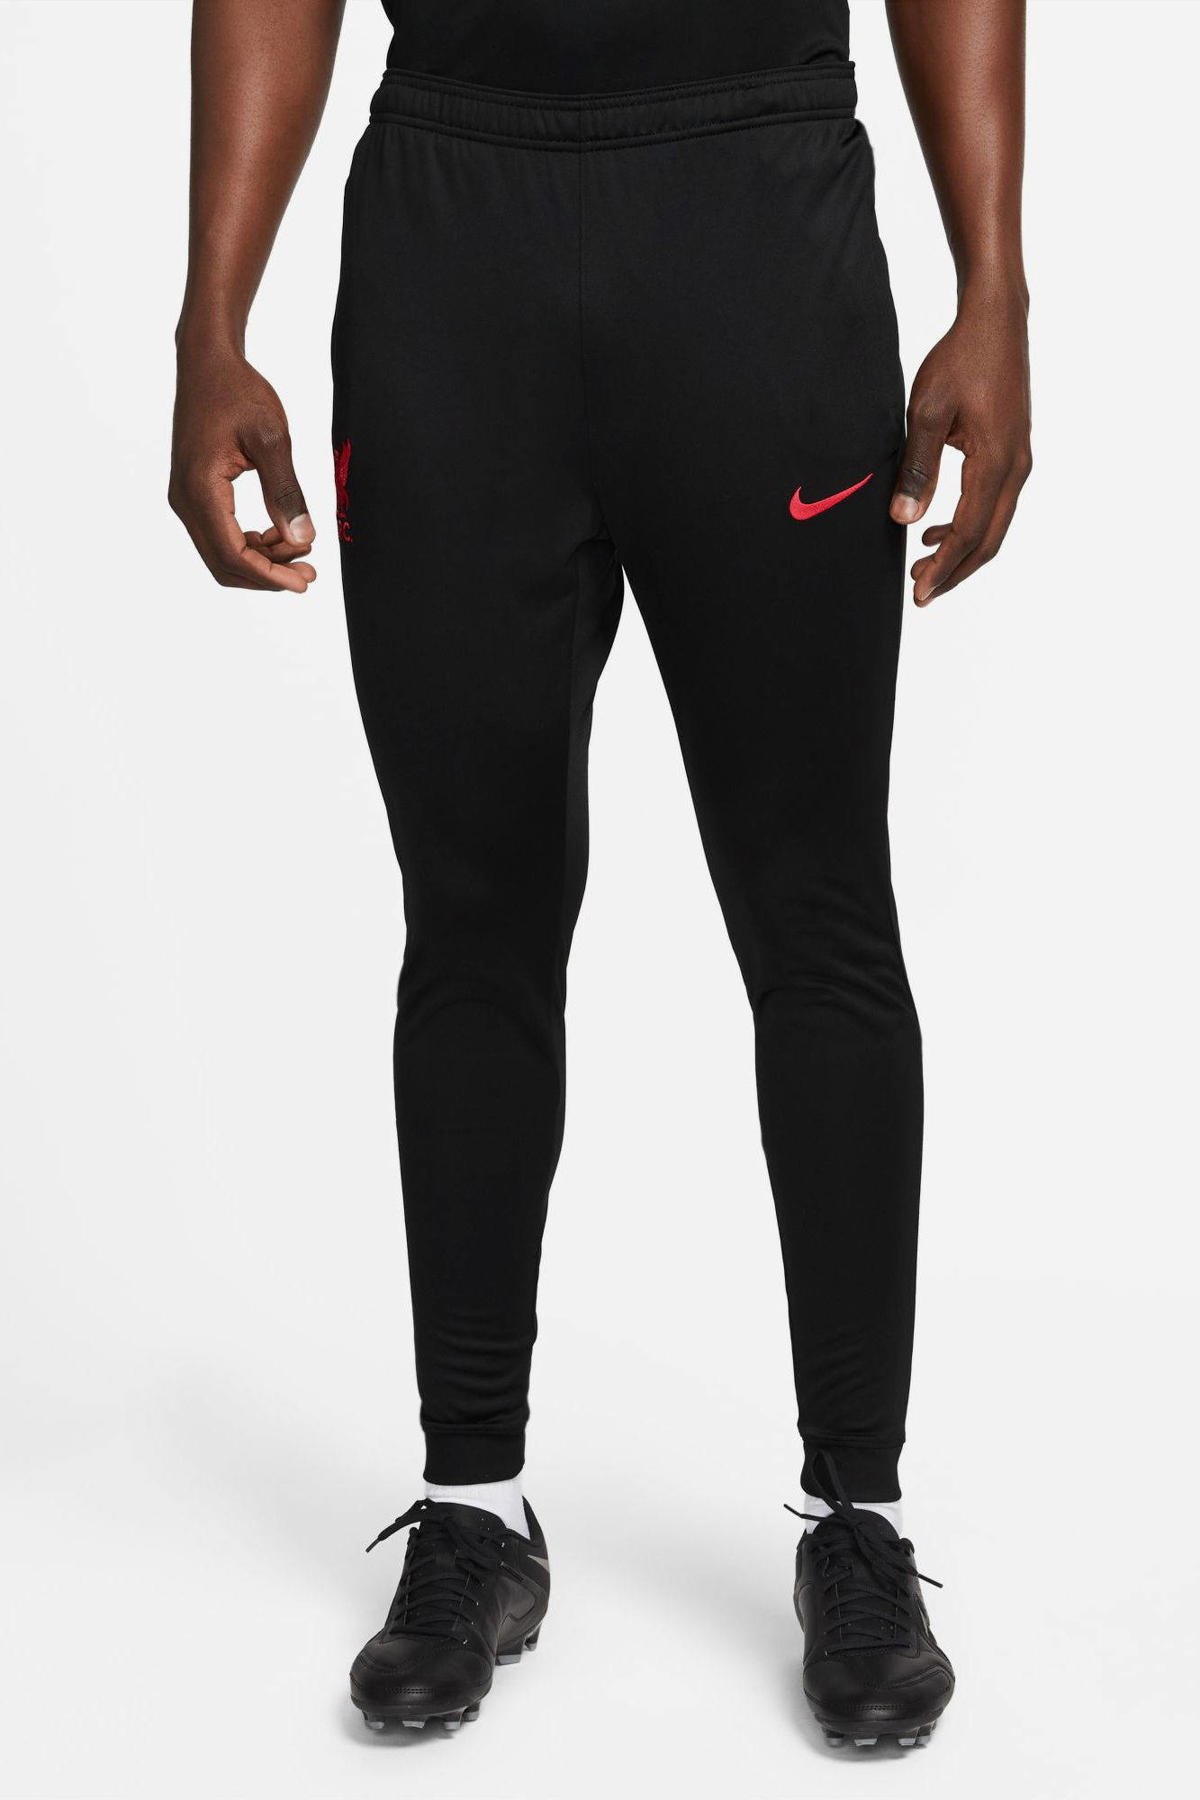 Kameel Actie Somatische cel Nike trainingsbroek zwart/roze | wehkamp